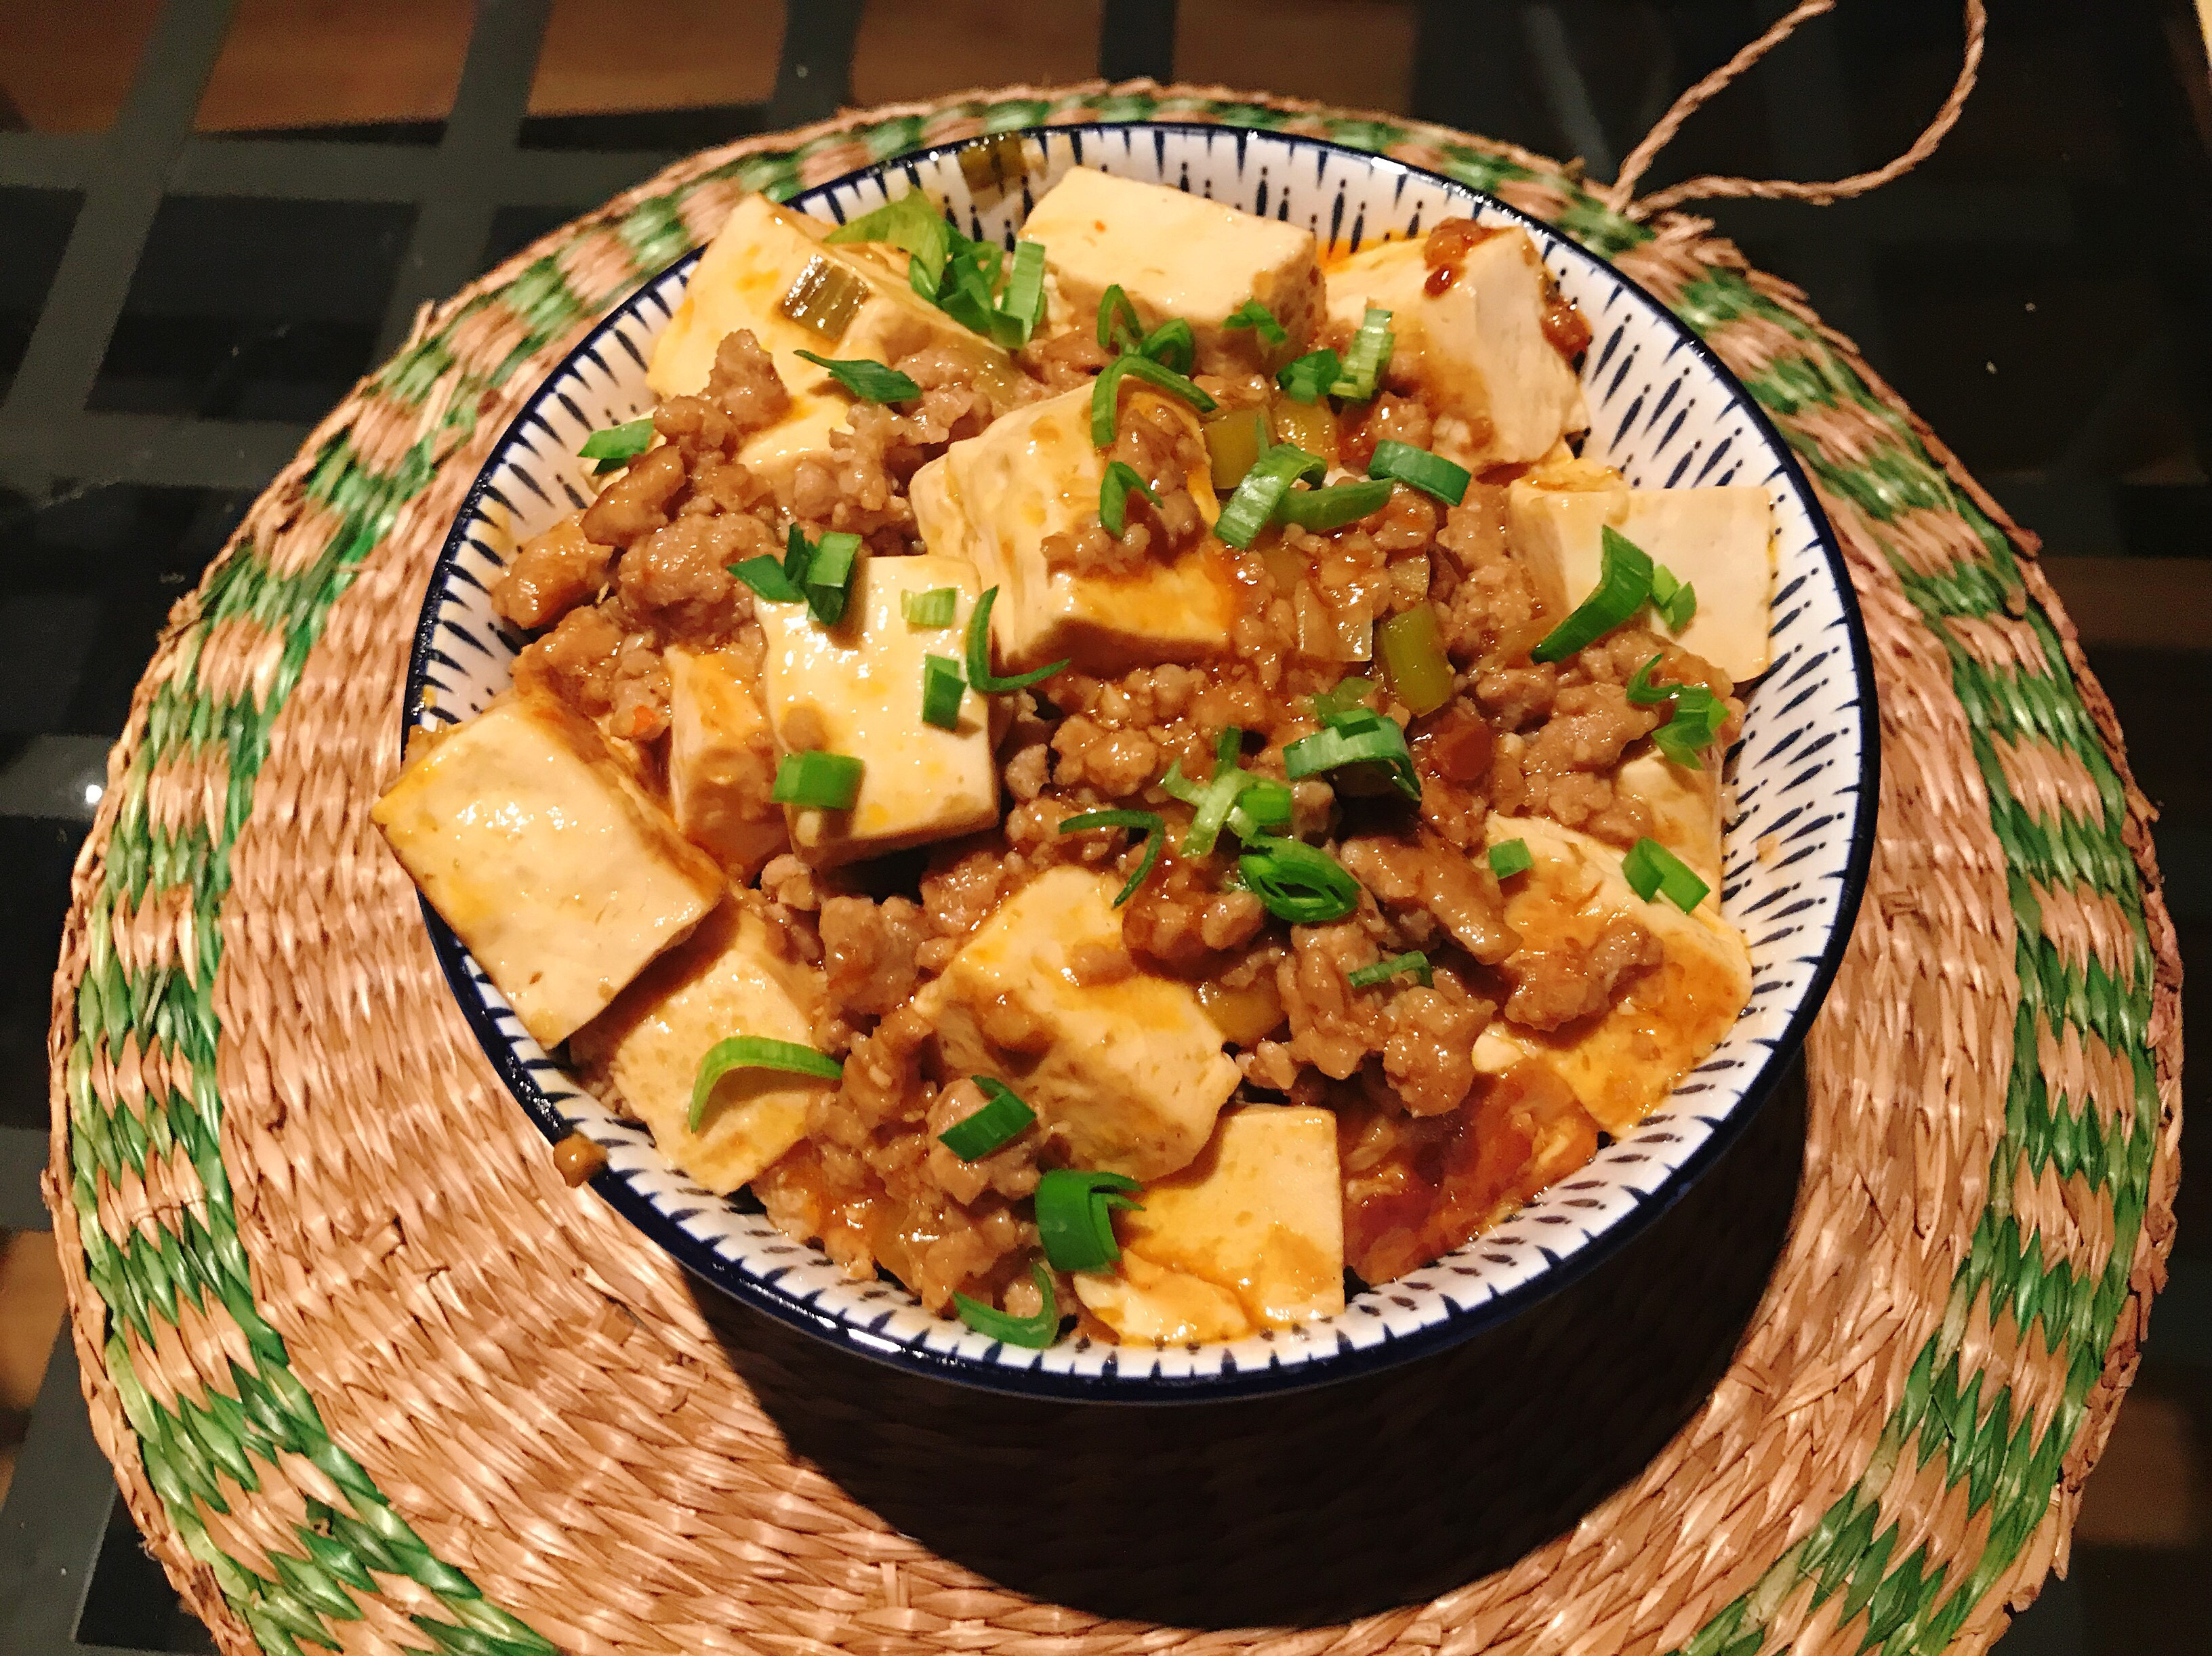 麻婆嫩豆腐 Mapo tofu